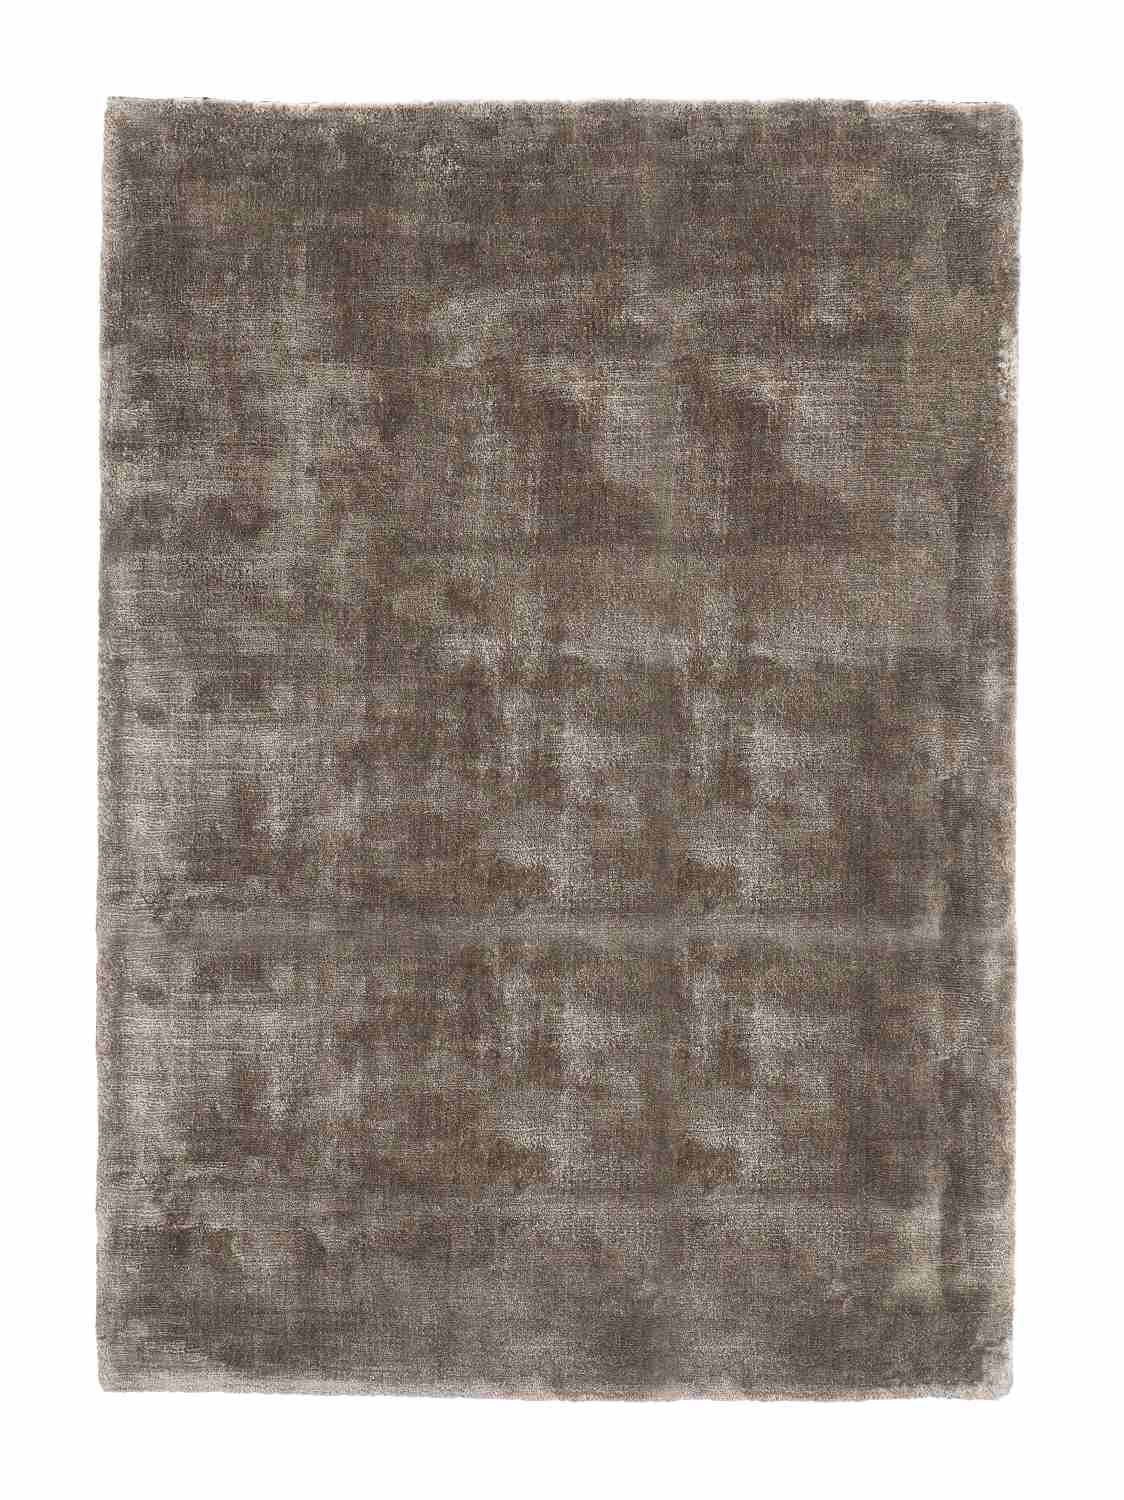 Der Teppich Samadhi überzeugt mit seinem modernen Design. Gefertigt wurde die Vorderseite aus Viskose und die Rückseite ist aus Baumwolle. Der Teppich besitzt einen braunen Farbton und die Maße von 140x200 cm.